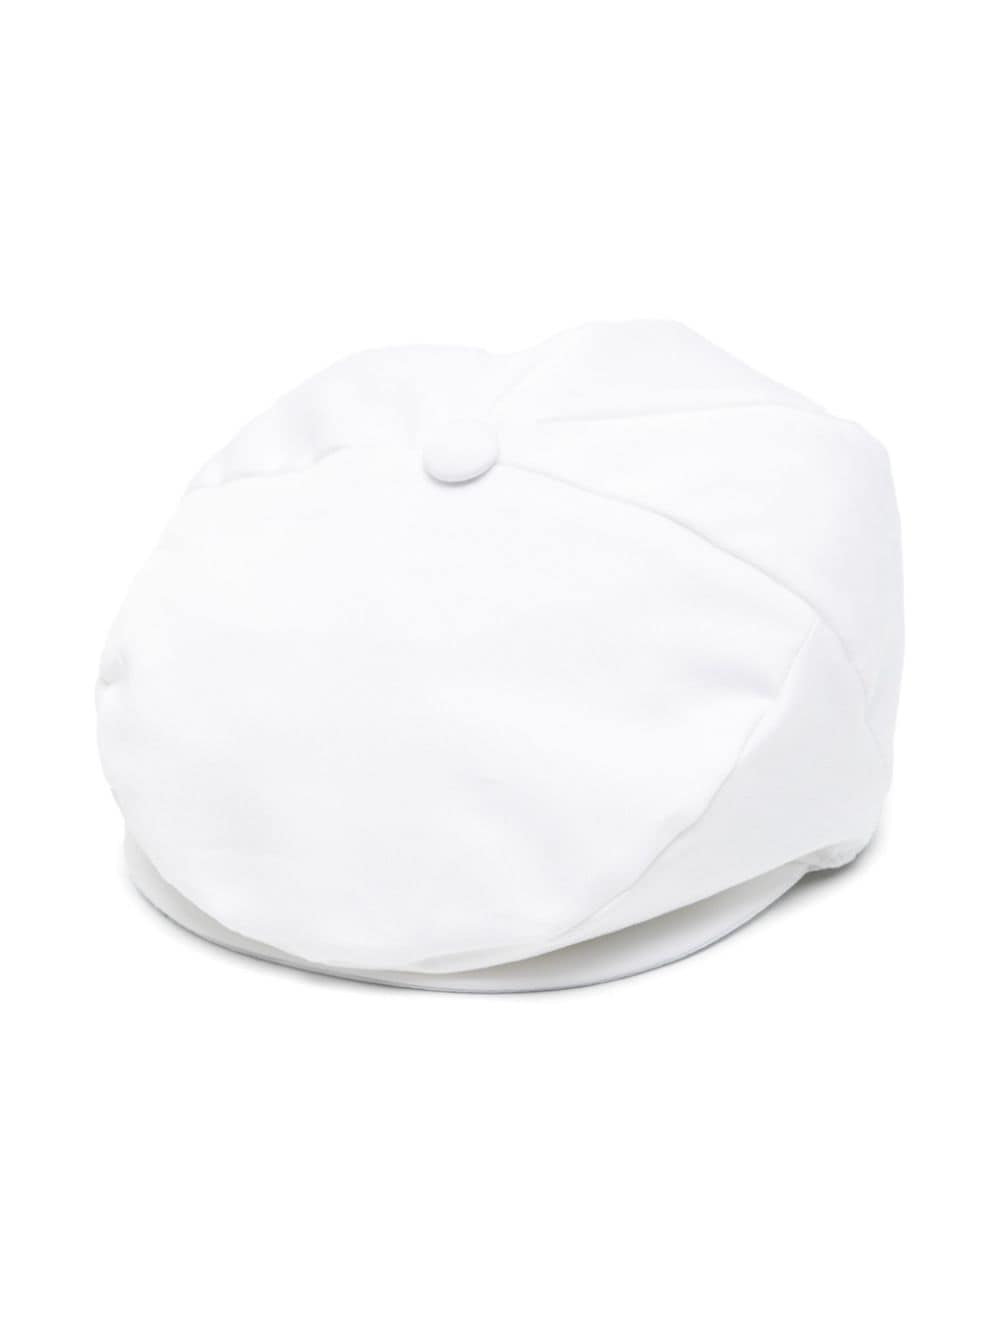 White cap for children